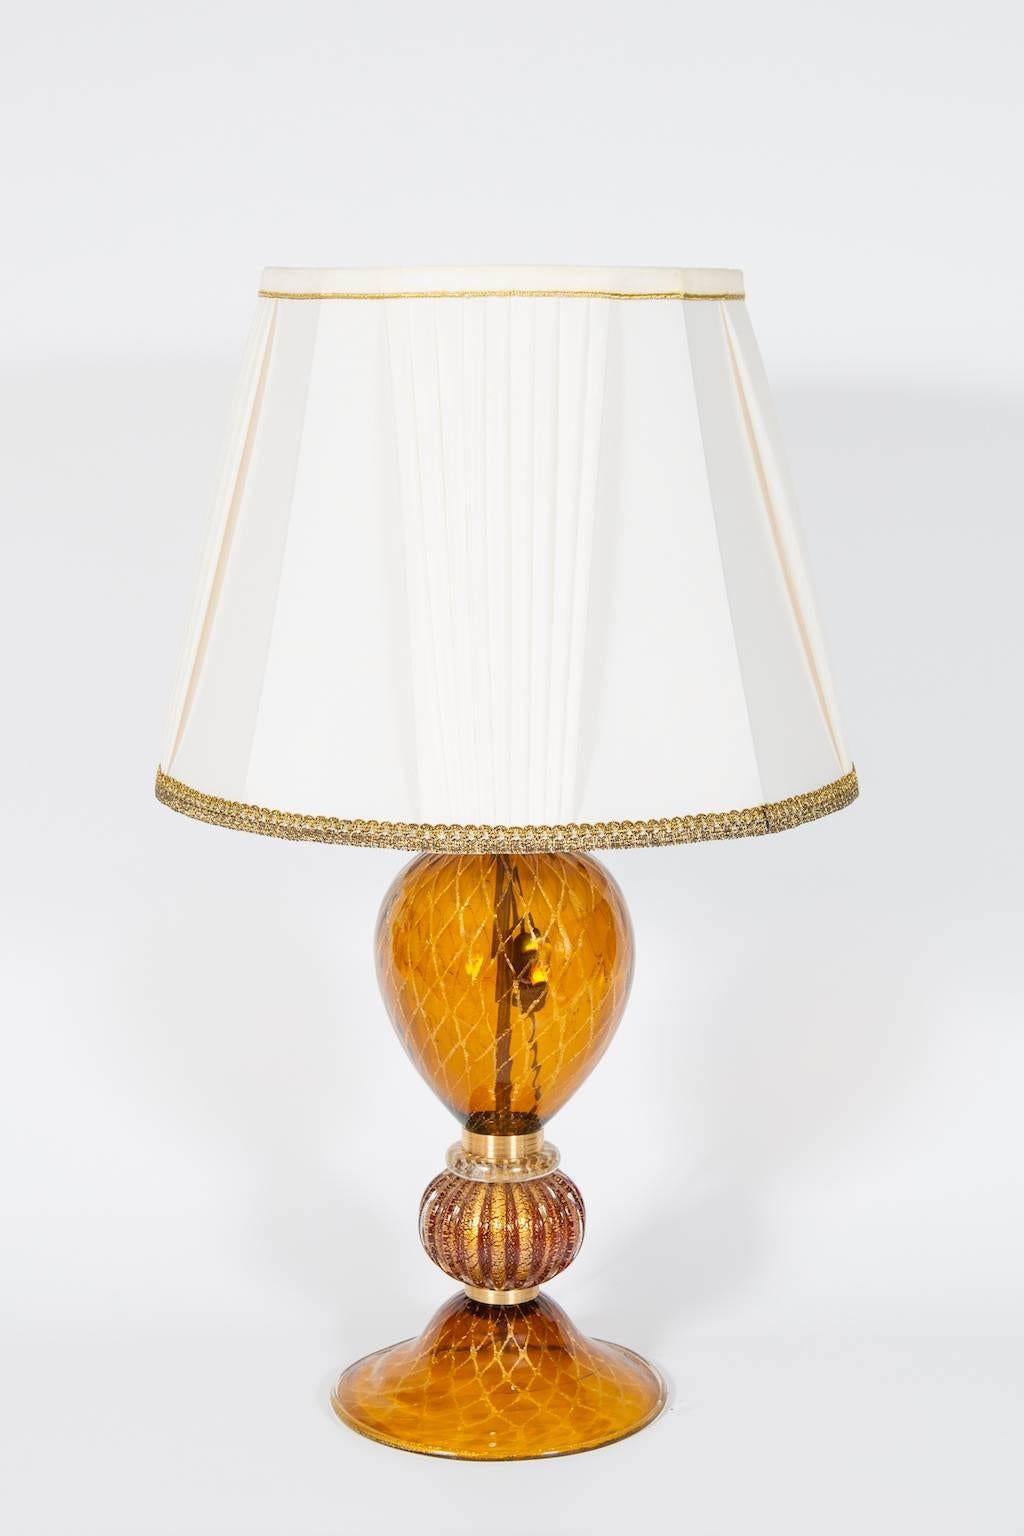 Elegante und einzigartige italienische venezianische Tischlampe,  Geblasenes Murano-Glas, Bernstein und 24-karätiges Gold, 1980er Jahre.
Dieses Porträt besteht aus einem Sockel und einem Hauptkörper aus Braunglas mit 24-karätigen Goldstreifen in